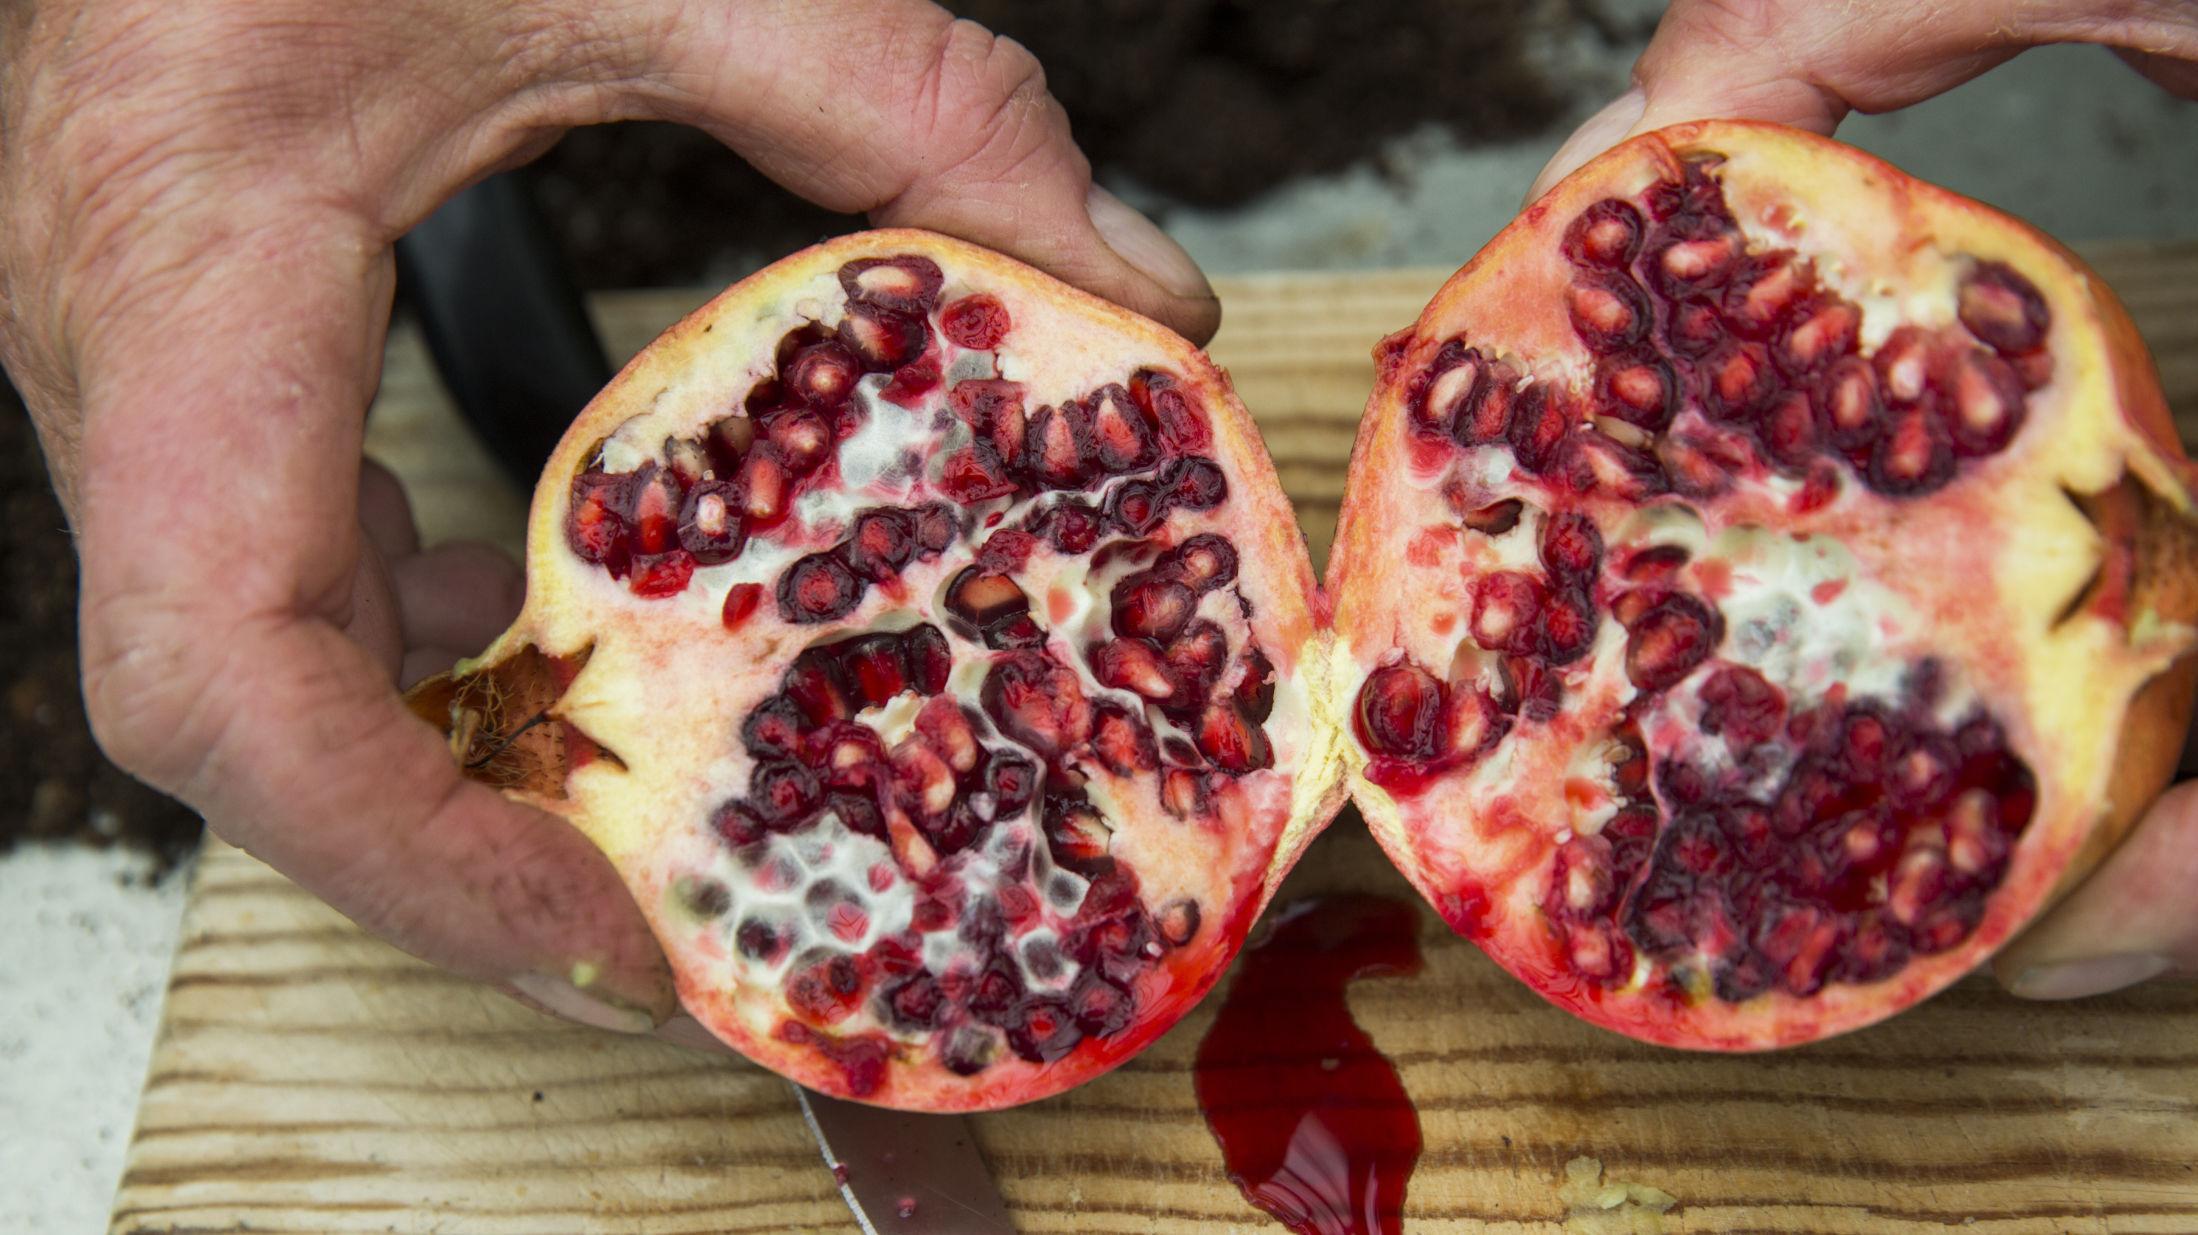 EKSOTISK: Under det harde skallet til granateple skjuler små, næringsrike fruktperler. Foto: Berit Roald / NTB scanpix